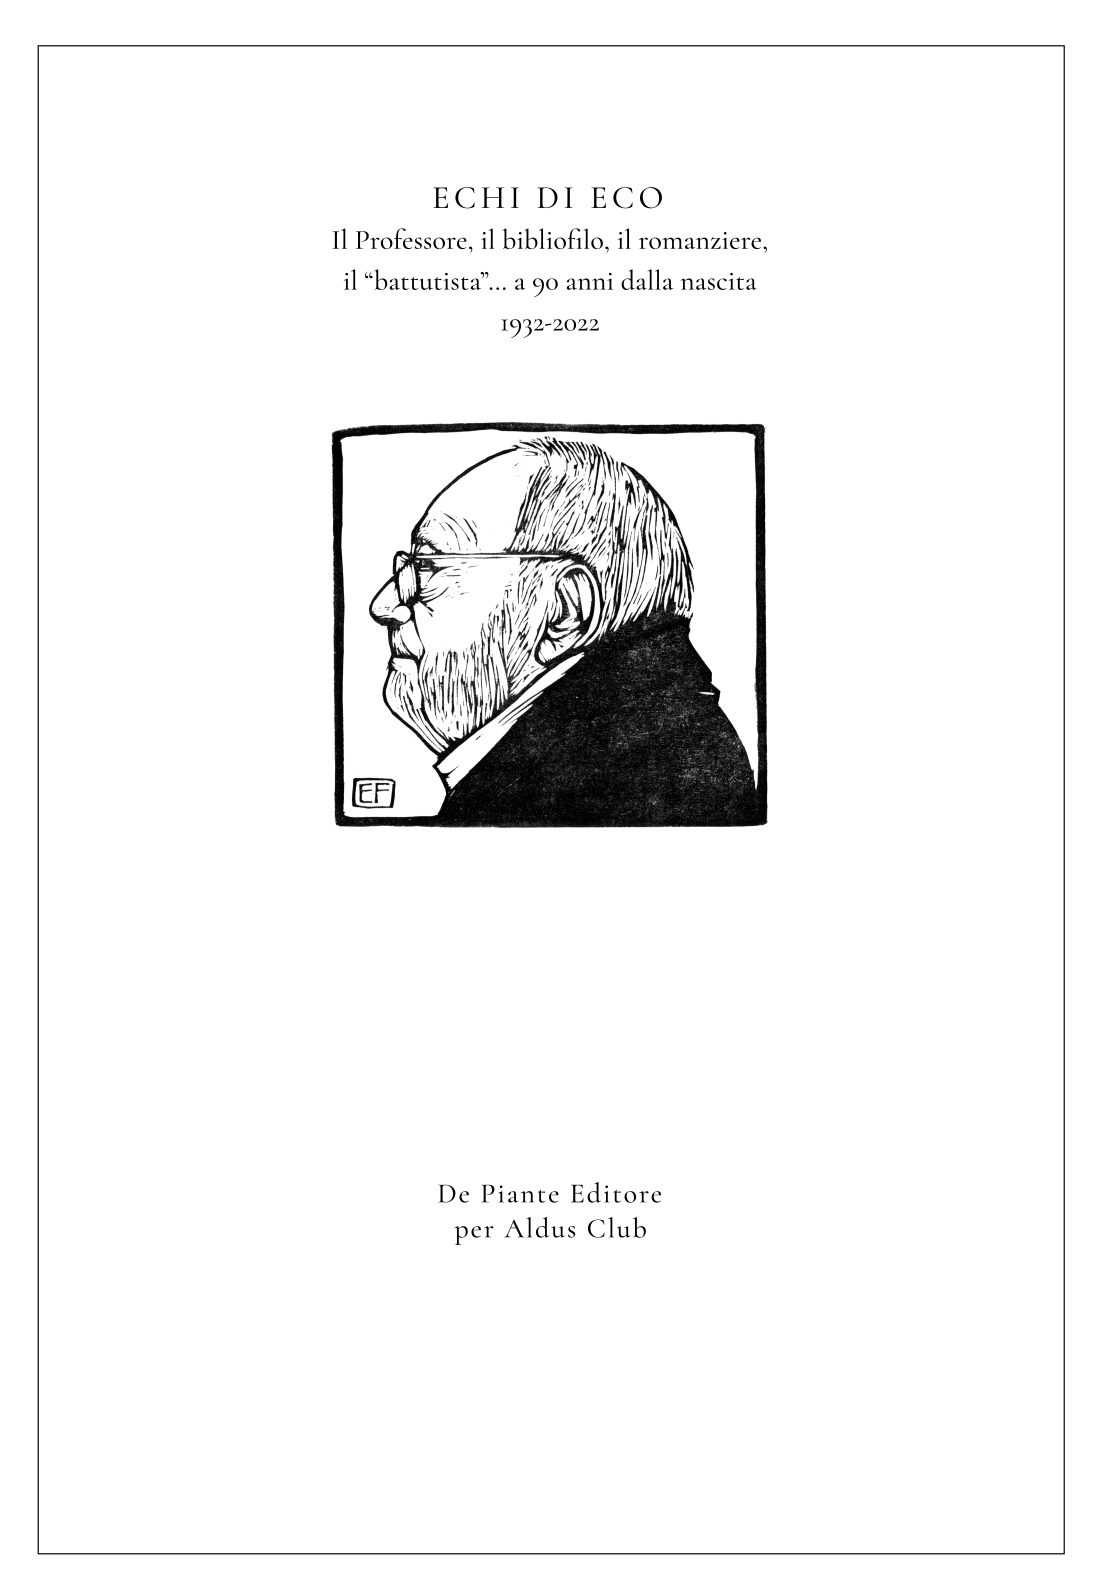 Per un Natale all’insegna di Umberto Eco regalatevi il nuovo quaderno dell’Aldus Club!